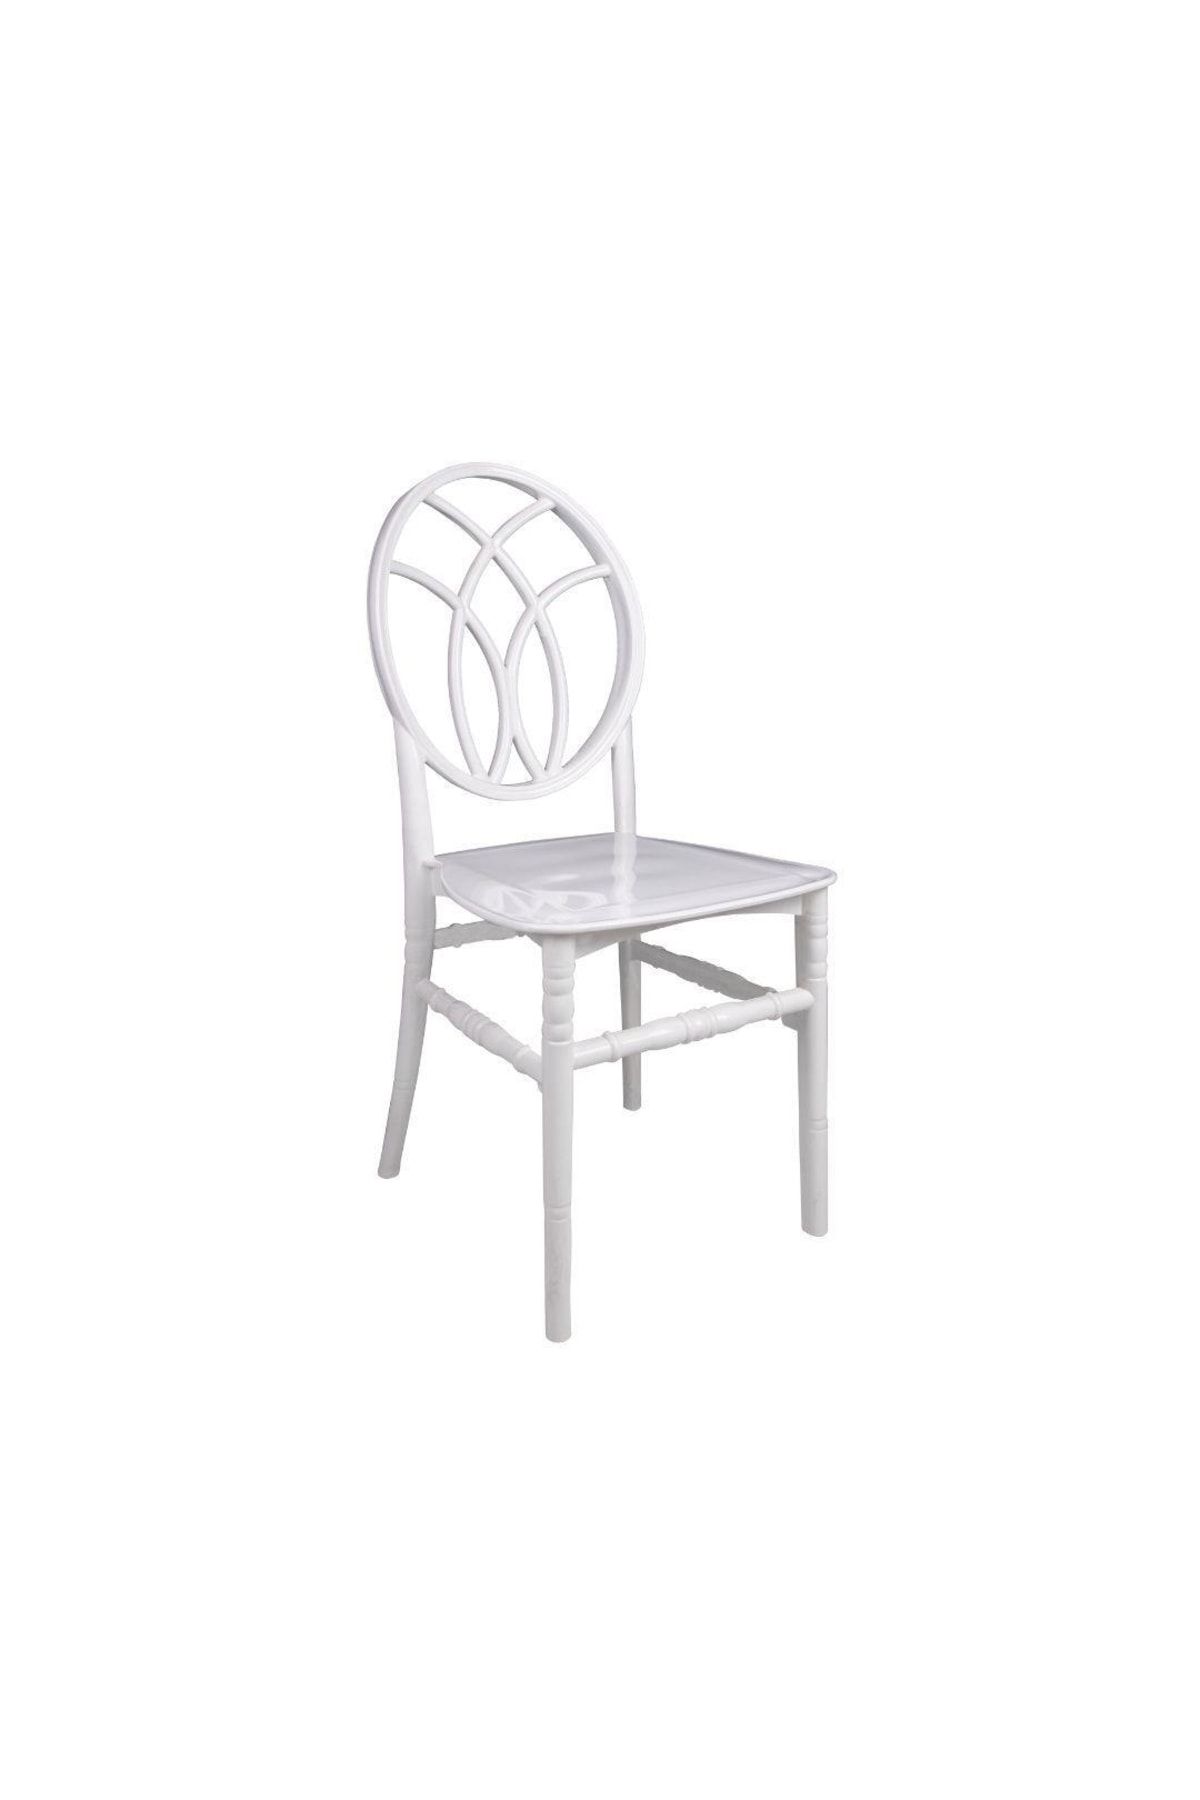 Mandella Karmen Düğün Sandalyesi Model 11 Beyaz (1 ADET)